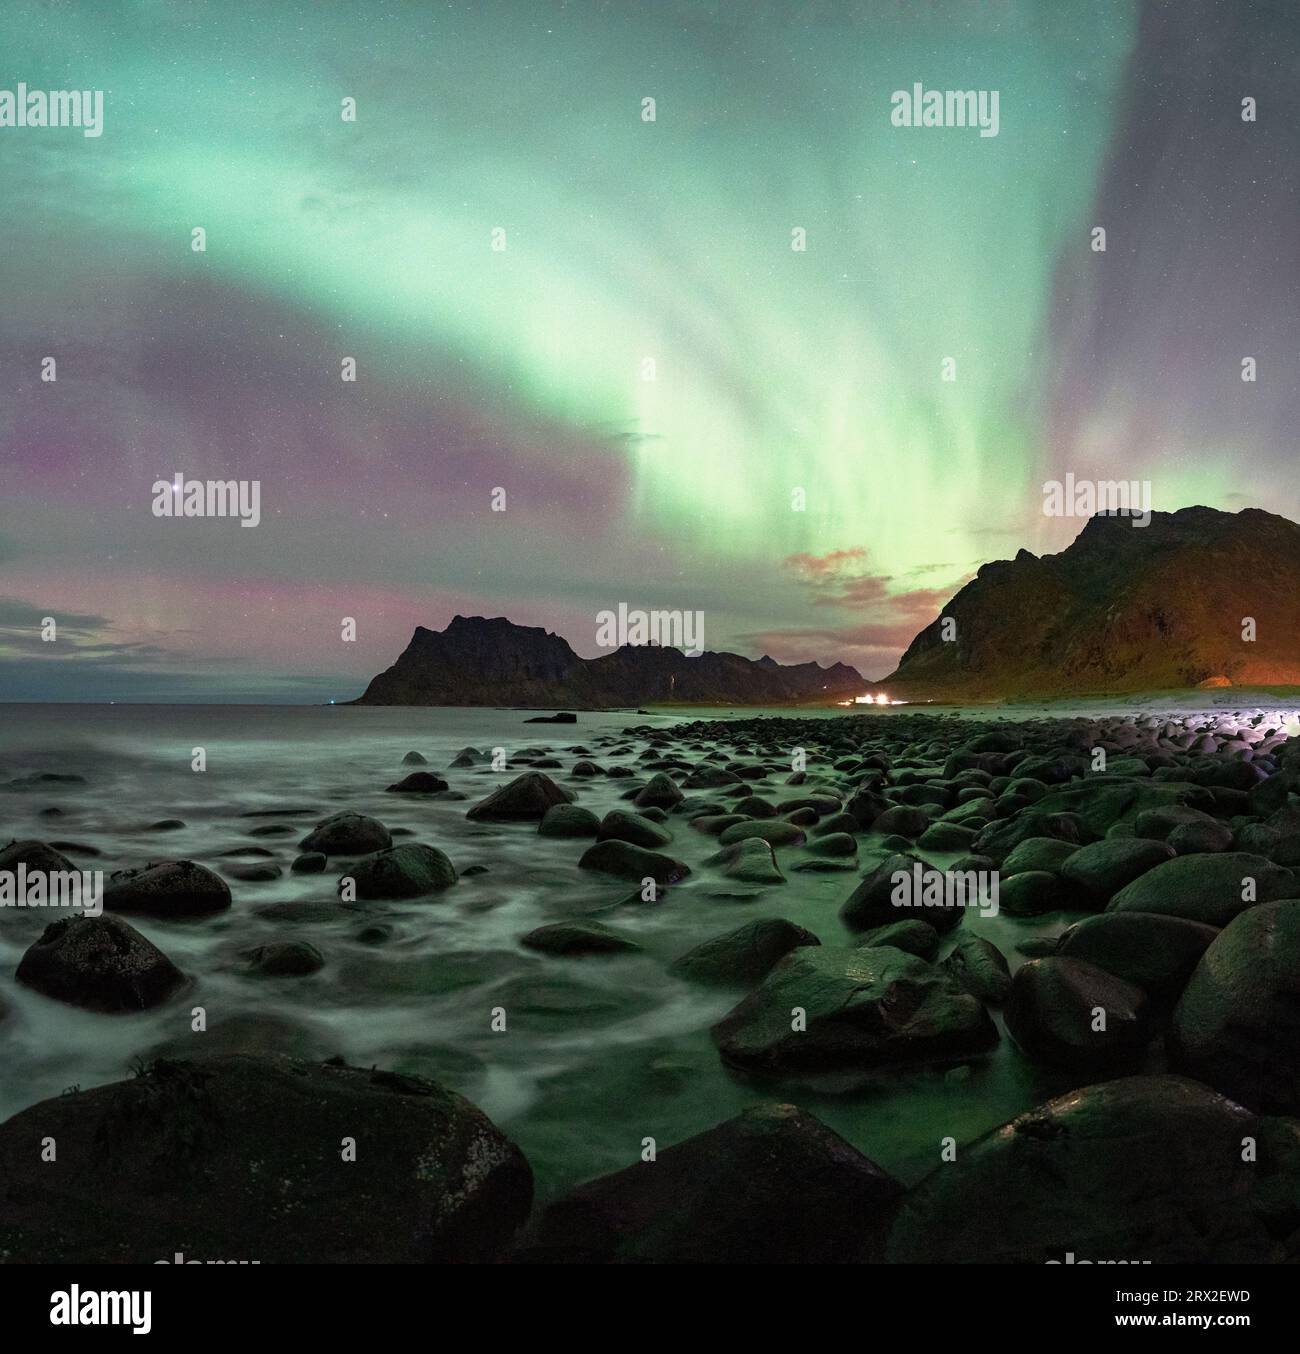 Onde che si infrangono sulle rocce della spiaggia di Uttakleiv sotto l'aurora boreale (aurora boreale), Vestvagoy, isole Lofoten, Nordland, Norvegia, Scandinavia Foto Stock